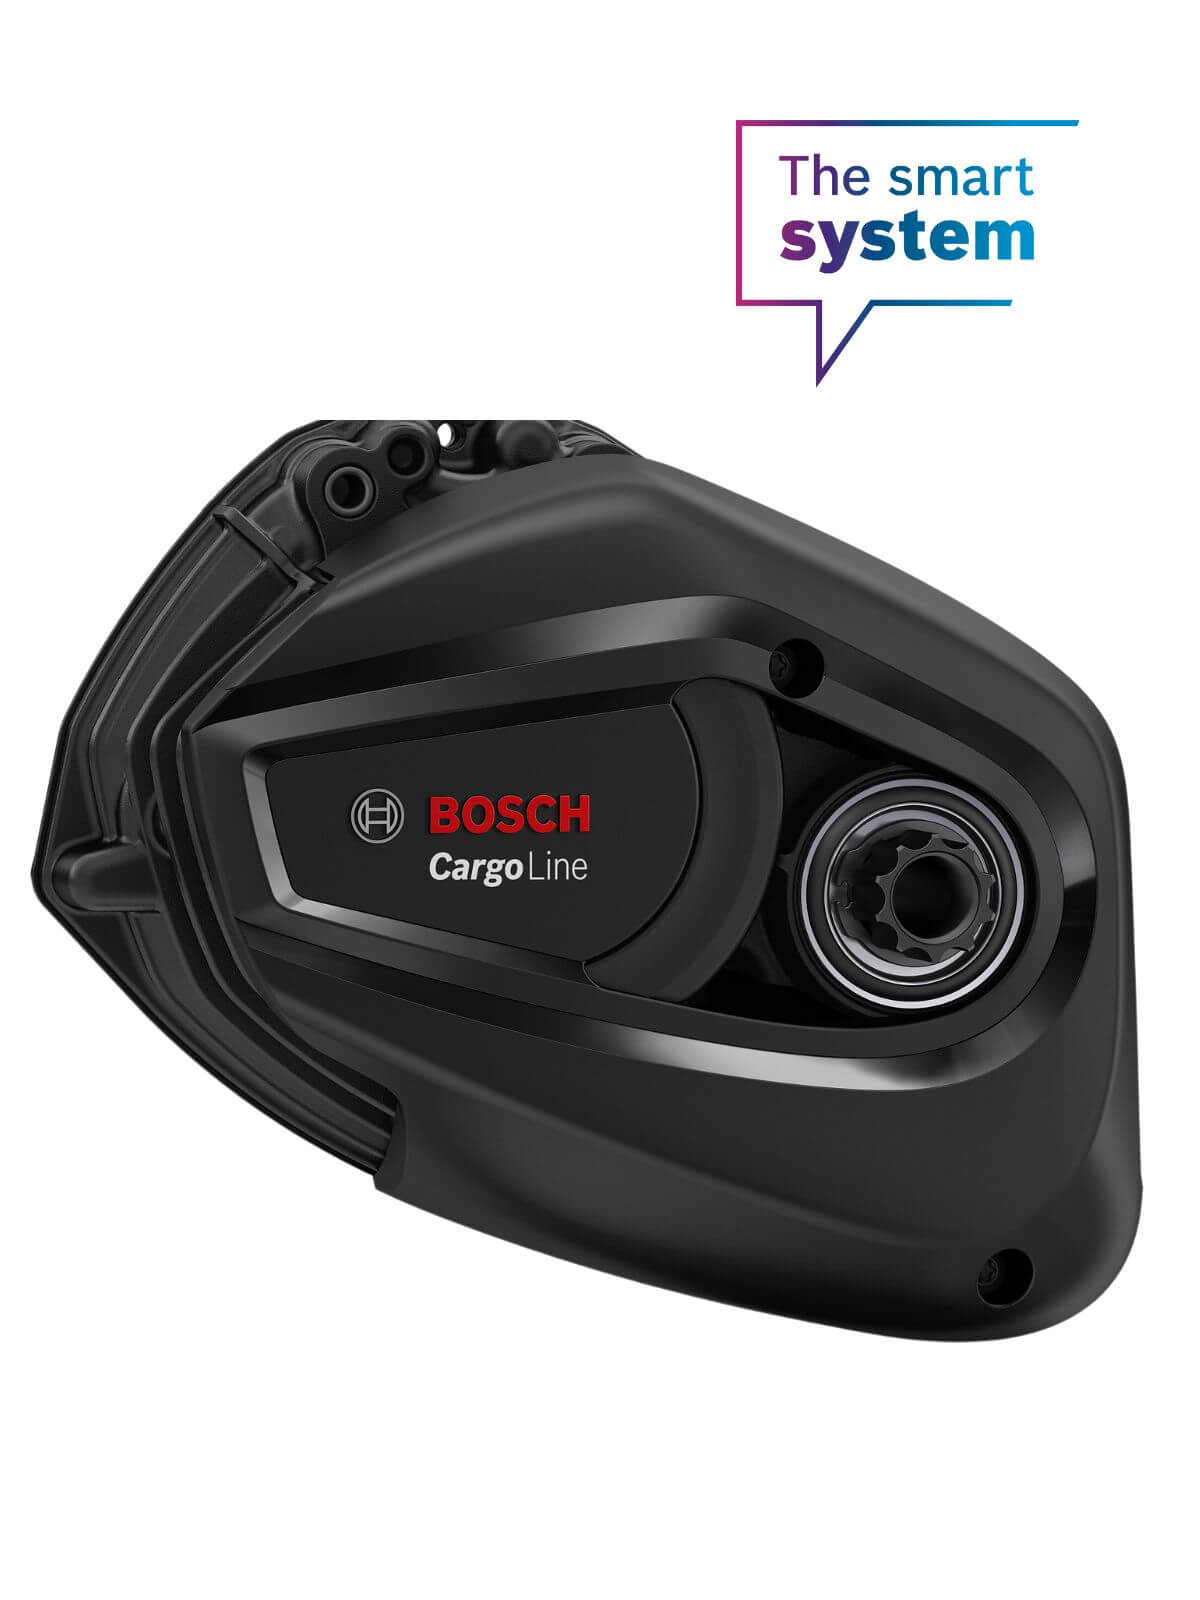 Bosch Smart system cargo motor